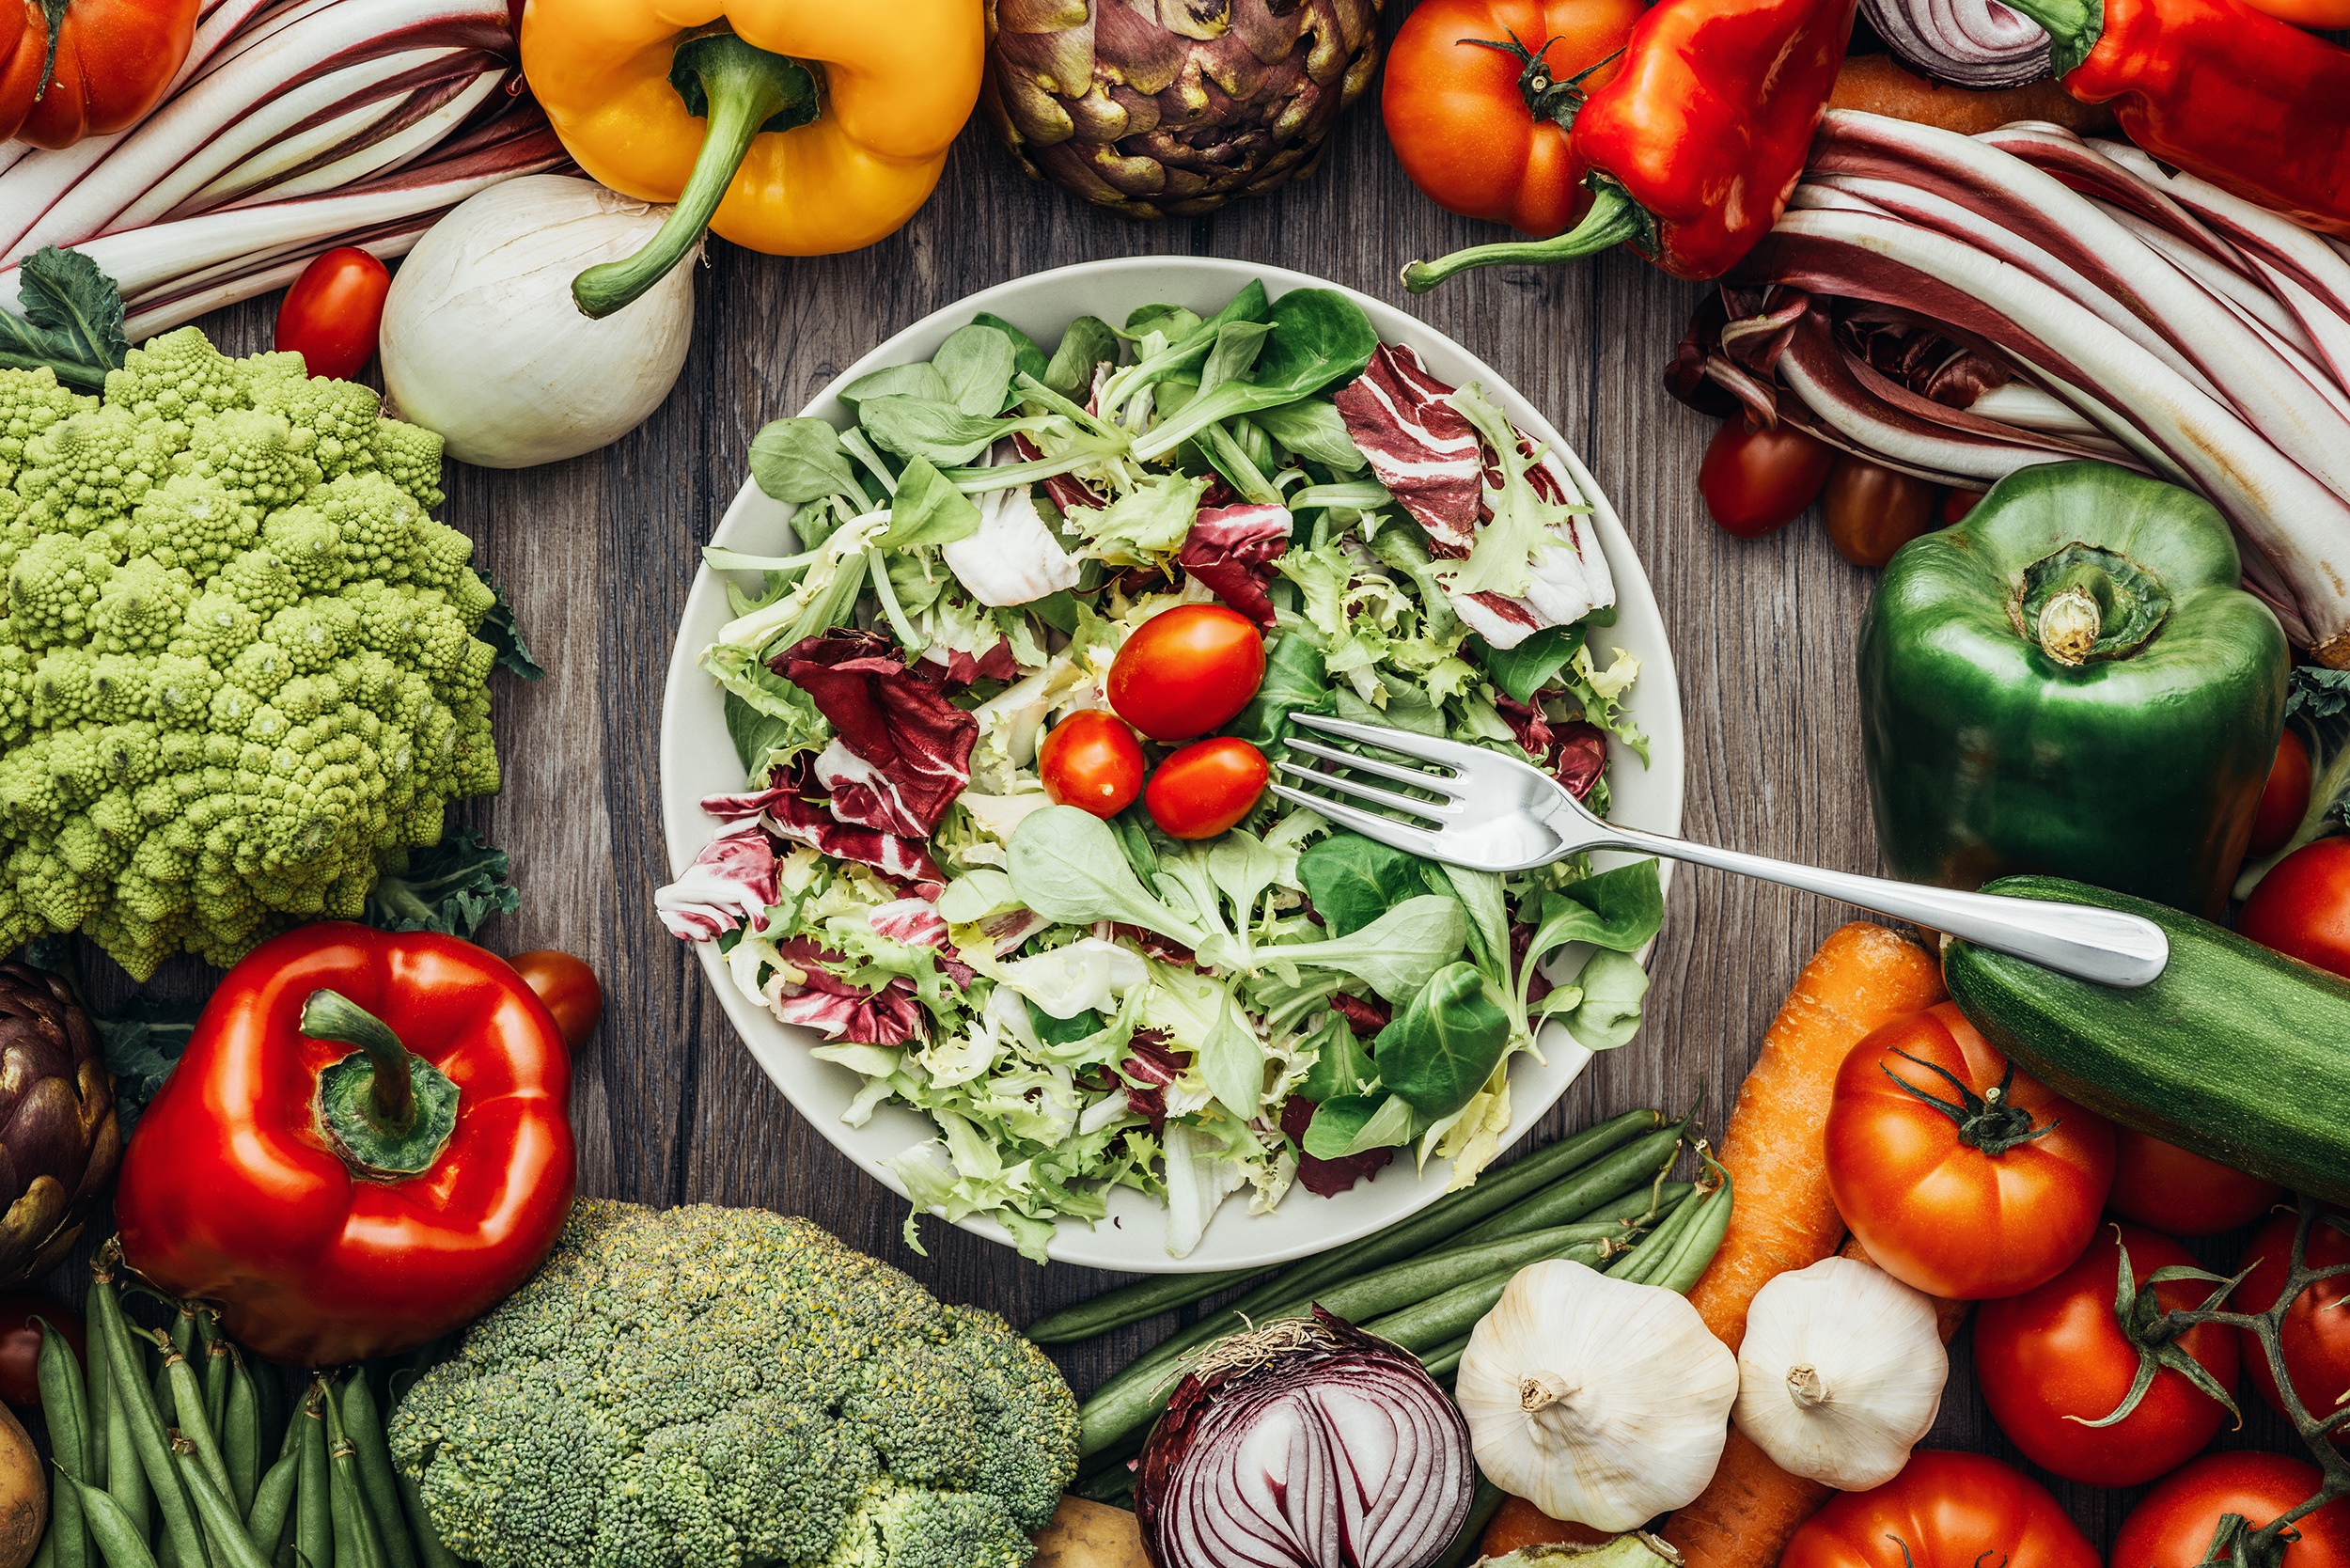 Free download wallpaper Food, Vegetables, Salad, Vegetable on your PC desktop